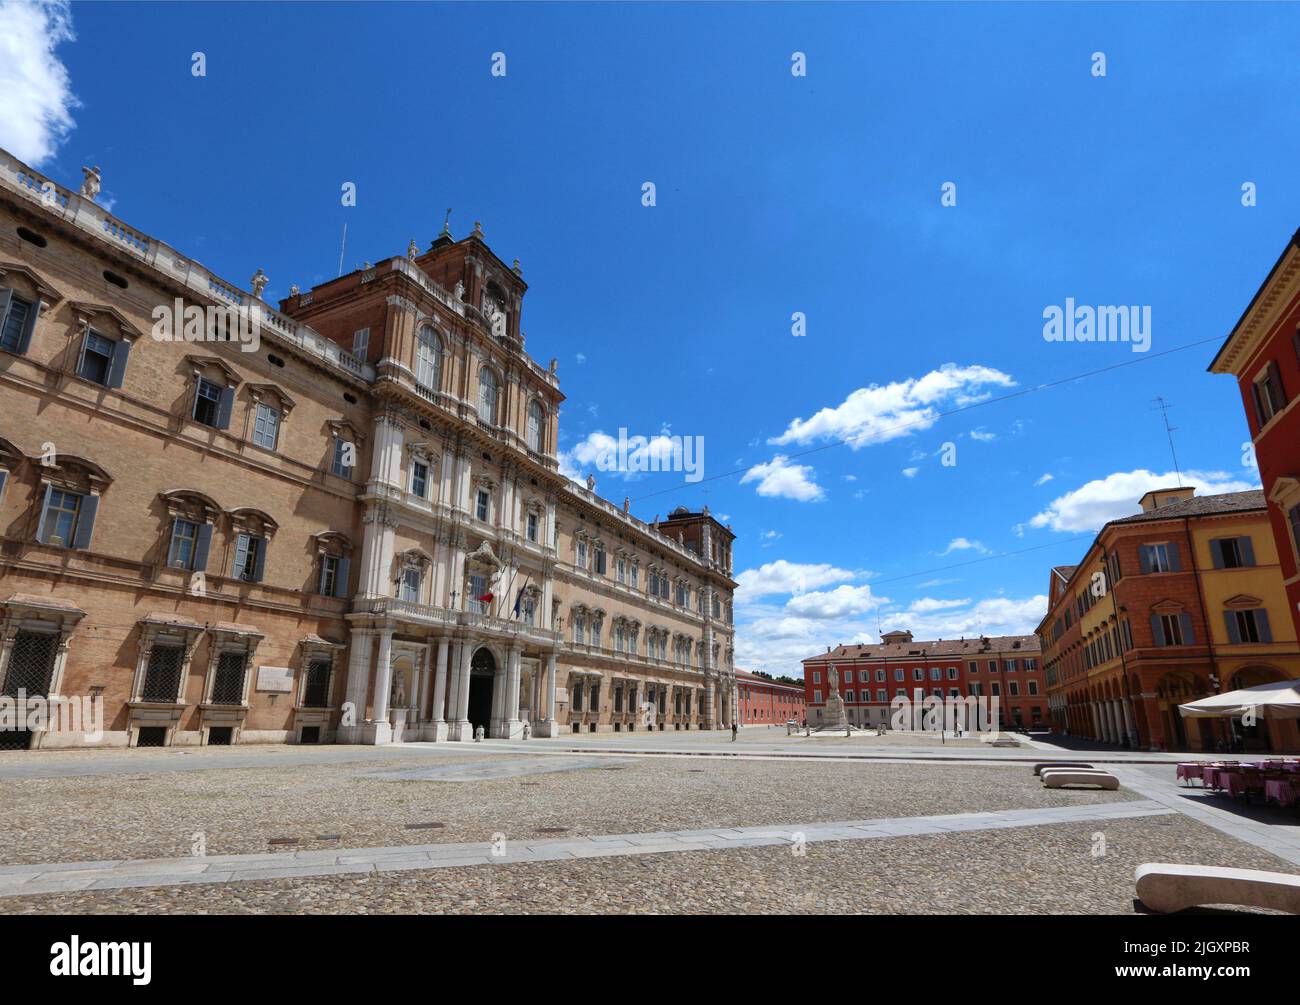 Modène, Émilie-Romagne, Italie, panorama de la Piazza Roma avec en arrière-plan la façade de l'ancien palais ducal, maintenant l'Académie militaire, touristique Banque D'Images